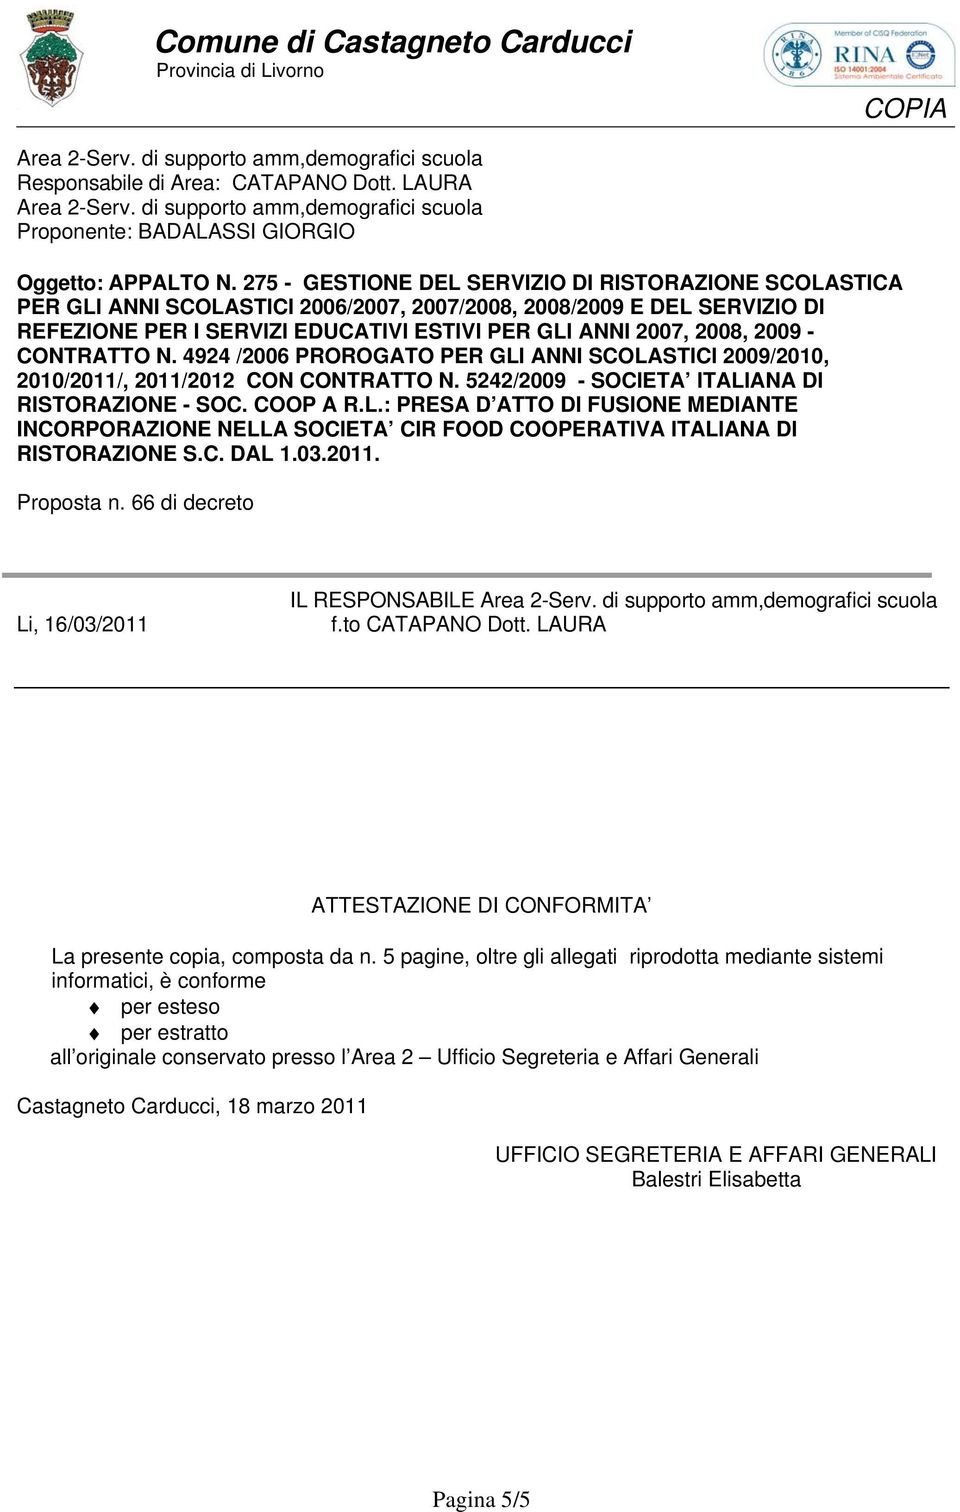 - CONTRATTO N. 4924 /2006 PROROGATO PER GLI ANNI SCOLASTICI 2009/2010, 2010/2011/, 2011/2012 CON CONTRATTO N. 5242/2009 - SOCIETA ITALIANA DI RISTORAZIONE - SOC. COOP A R.L.: PRESA D ATTO DI FUSIONE MEDIANTE INCORPORAZIONE NELLA SOCIETA CIR FOOD COOPERATIVA ITALIANA DI RISTORAZIONE S.